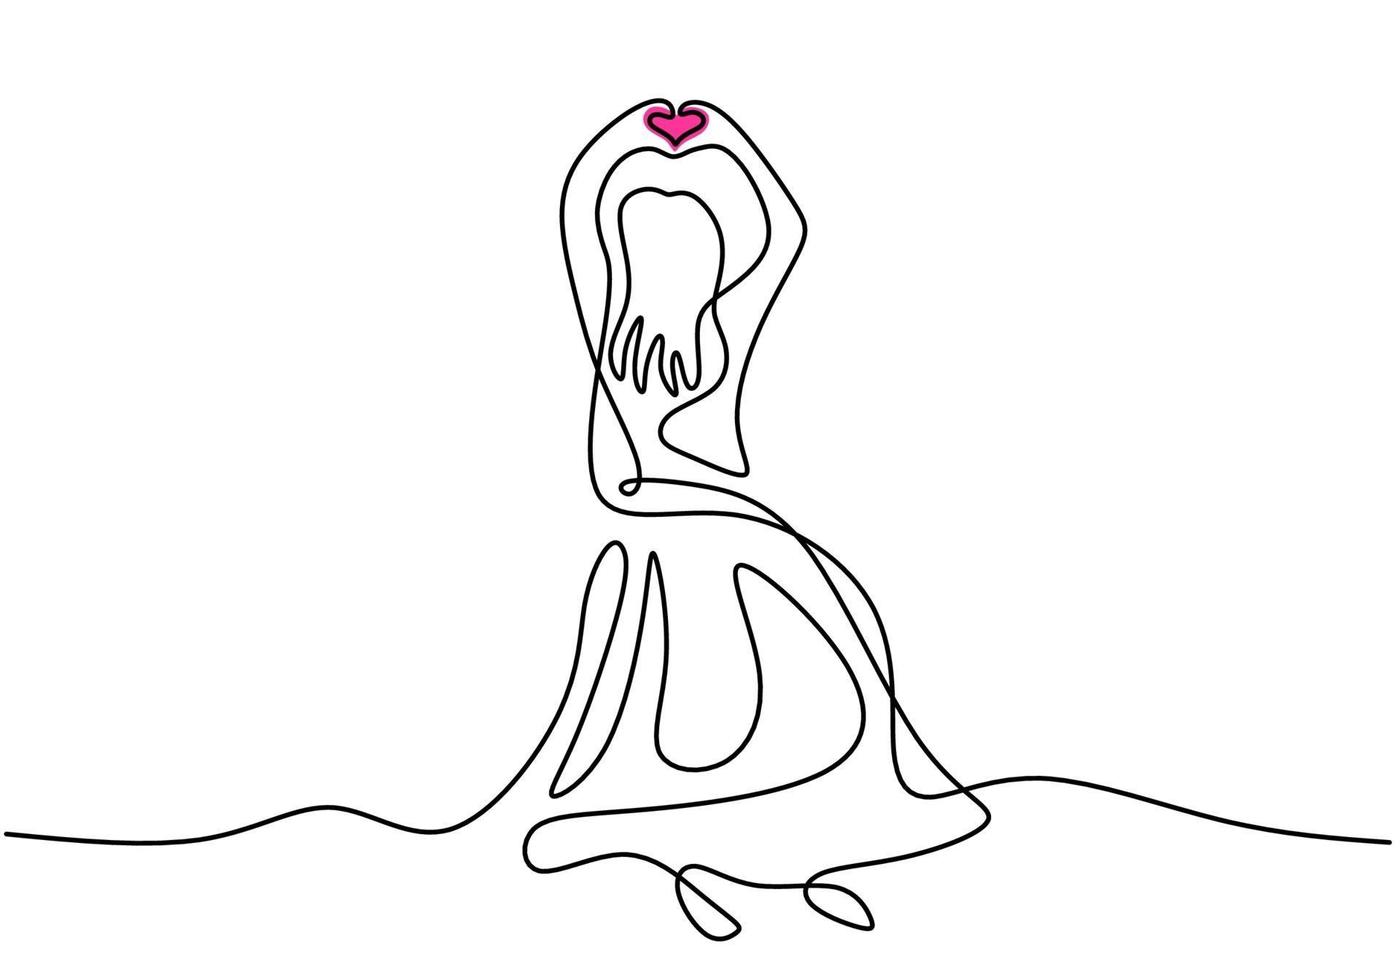 doorlopende lijntekening van vrouw met lange jurk. mooie vrouw elegante jurk dragen haar handen in elkaar en hart teken tonen. gelukkige vrouwendag. vrouwelijk mode-concept. vector illustratie